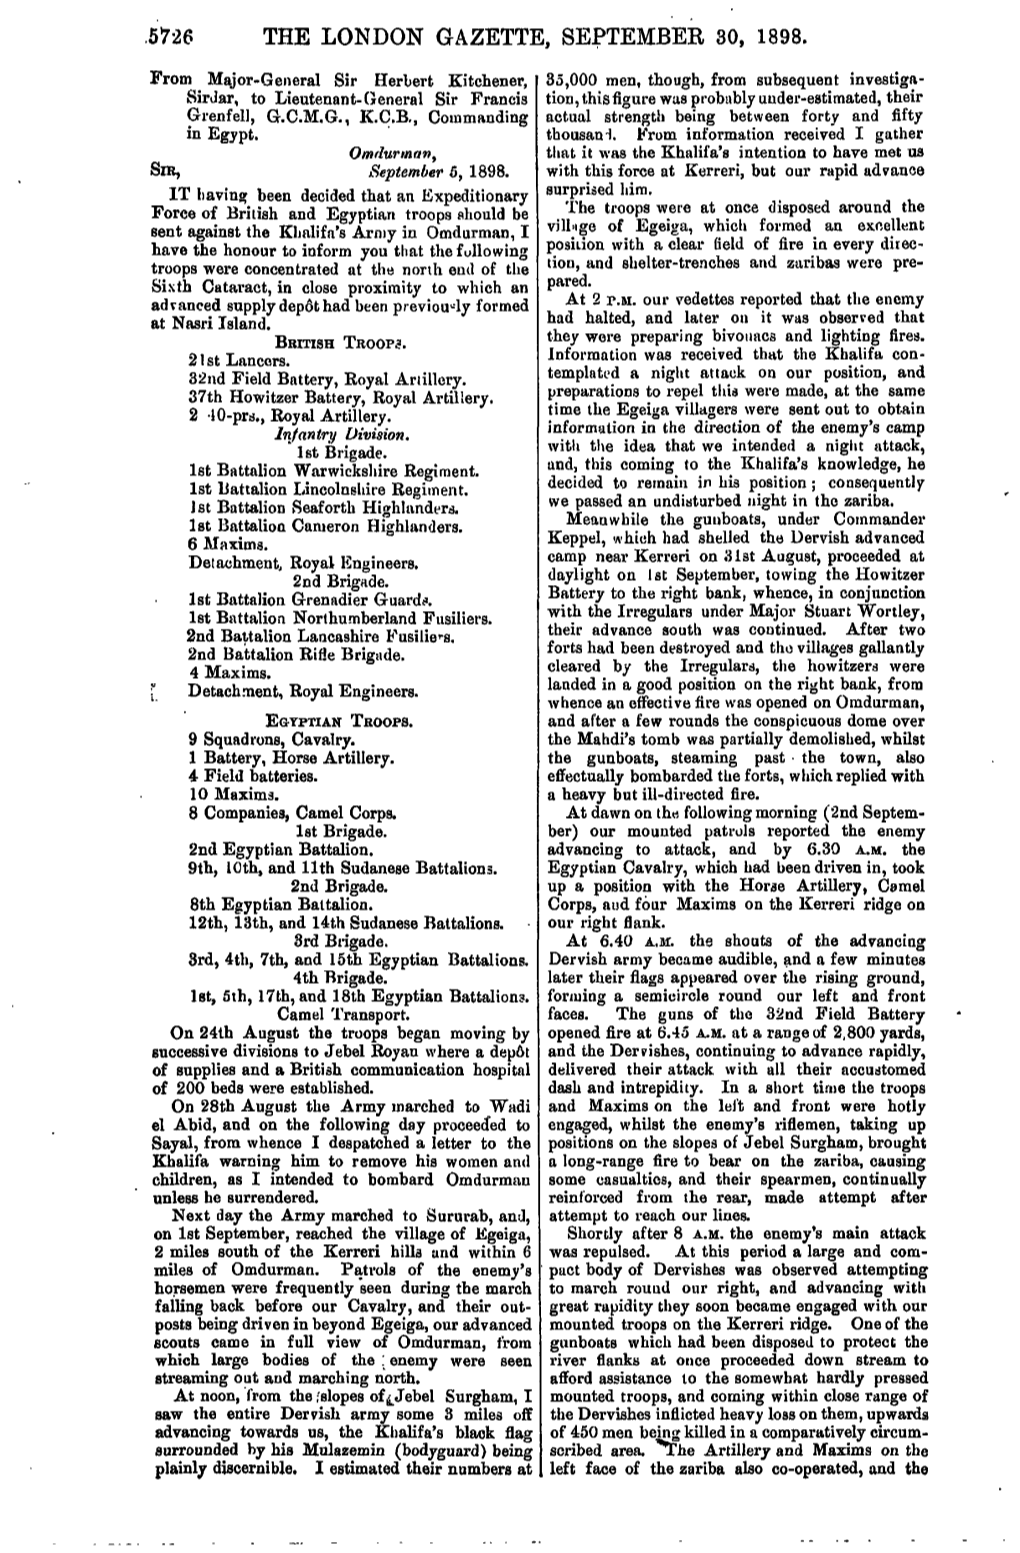 5726 the London Gazette, September 30, 1898